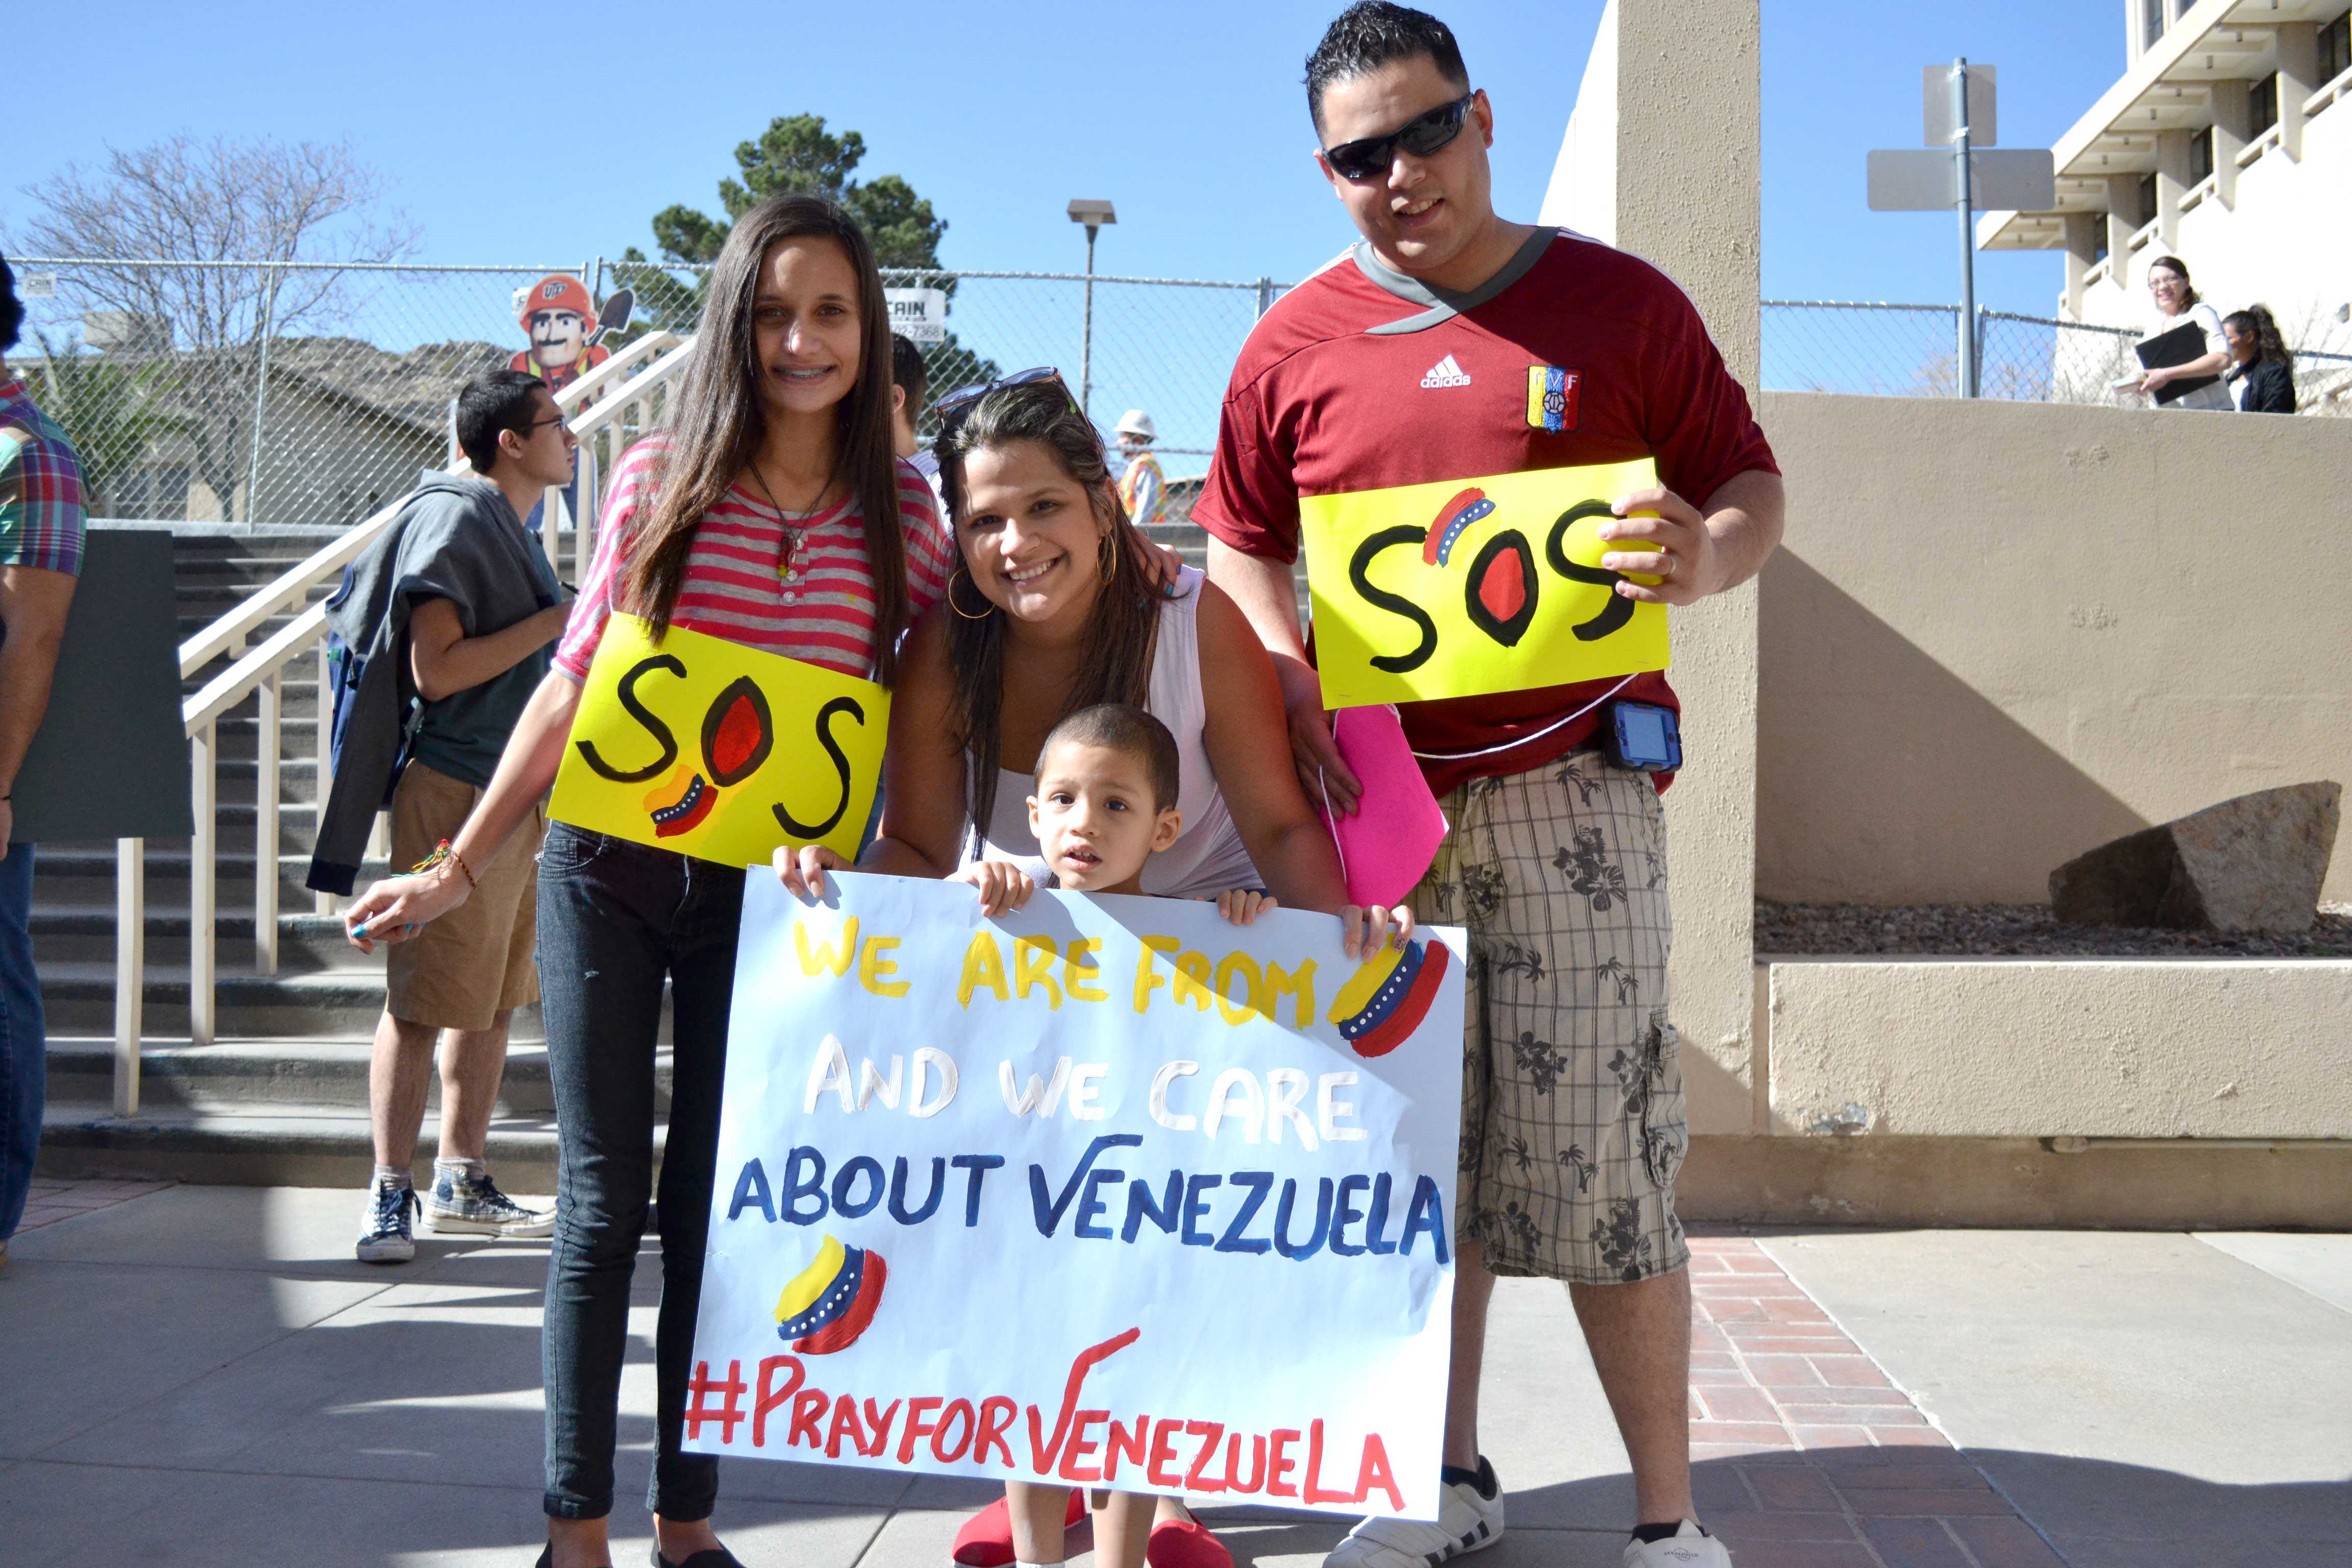 In+El+Paso%2C+support+for+Venezuelan+protesters+grows